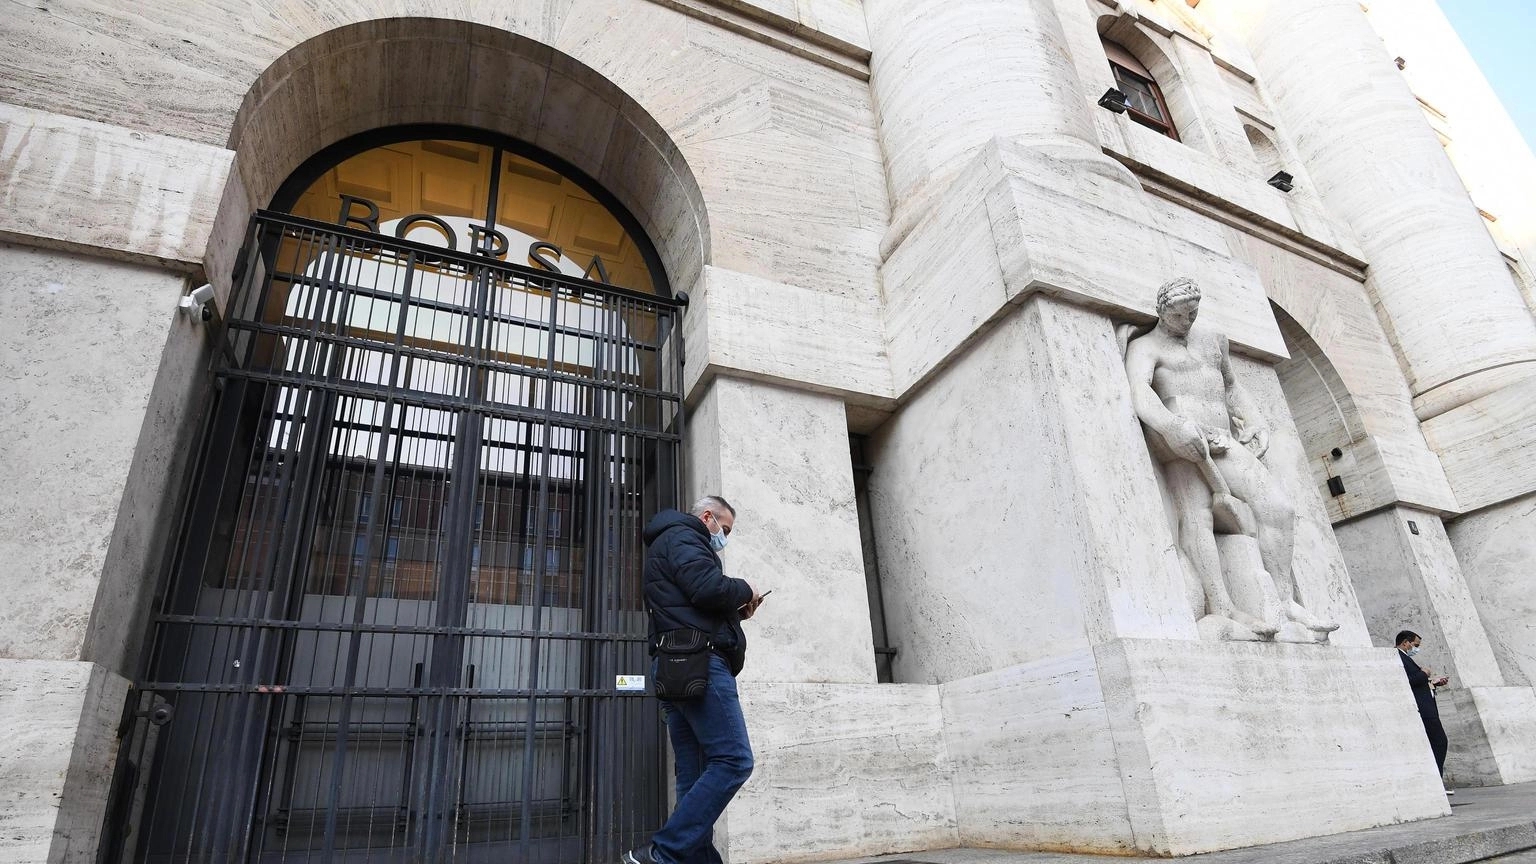 Borsa: Milano tiene (+0,1%), balzo di A2a e Iveco, giù Unicredit